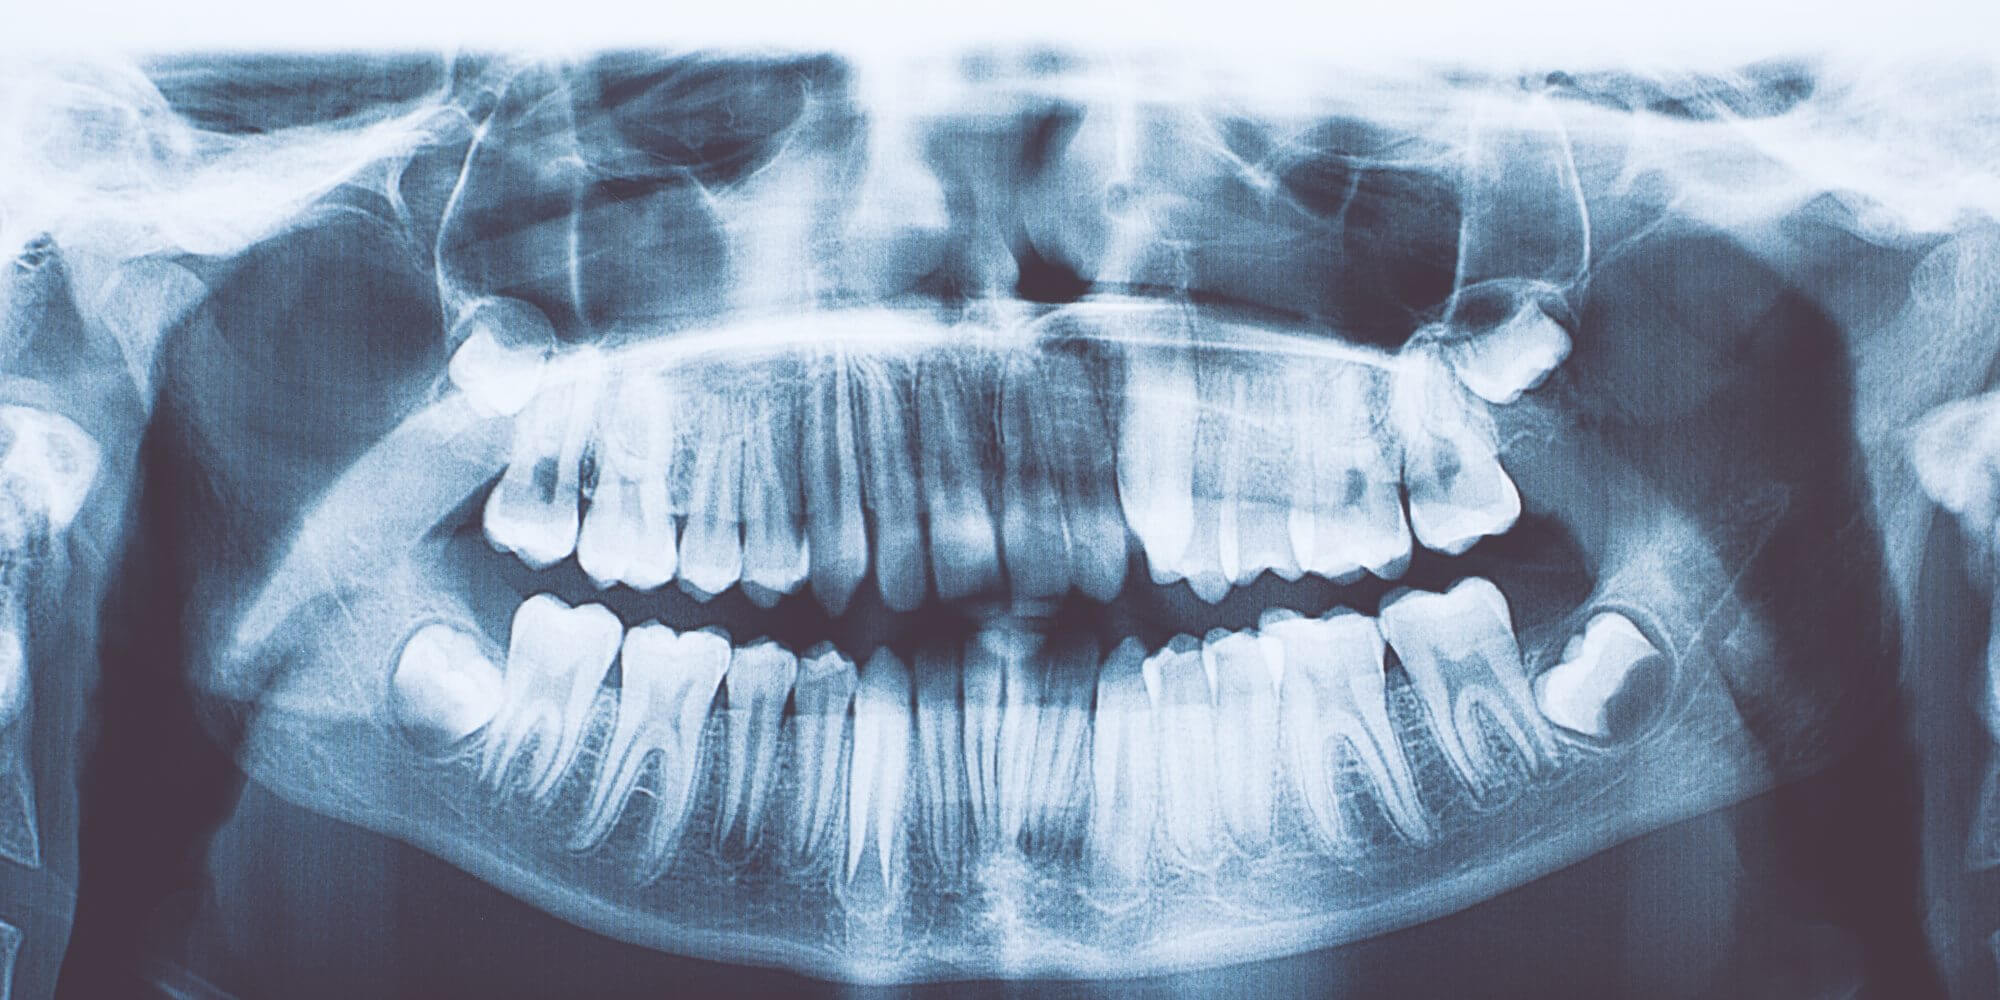 Bir hintli çocuk bulundu 526 gereksiz diş. Nedir bu hastalık?